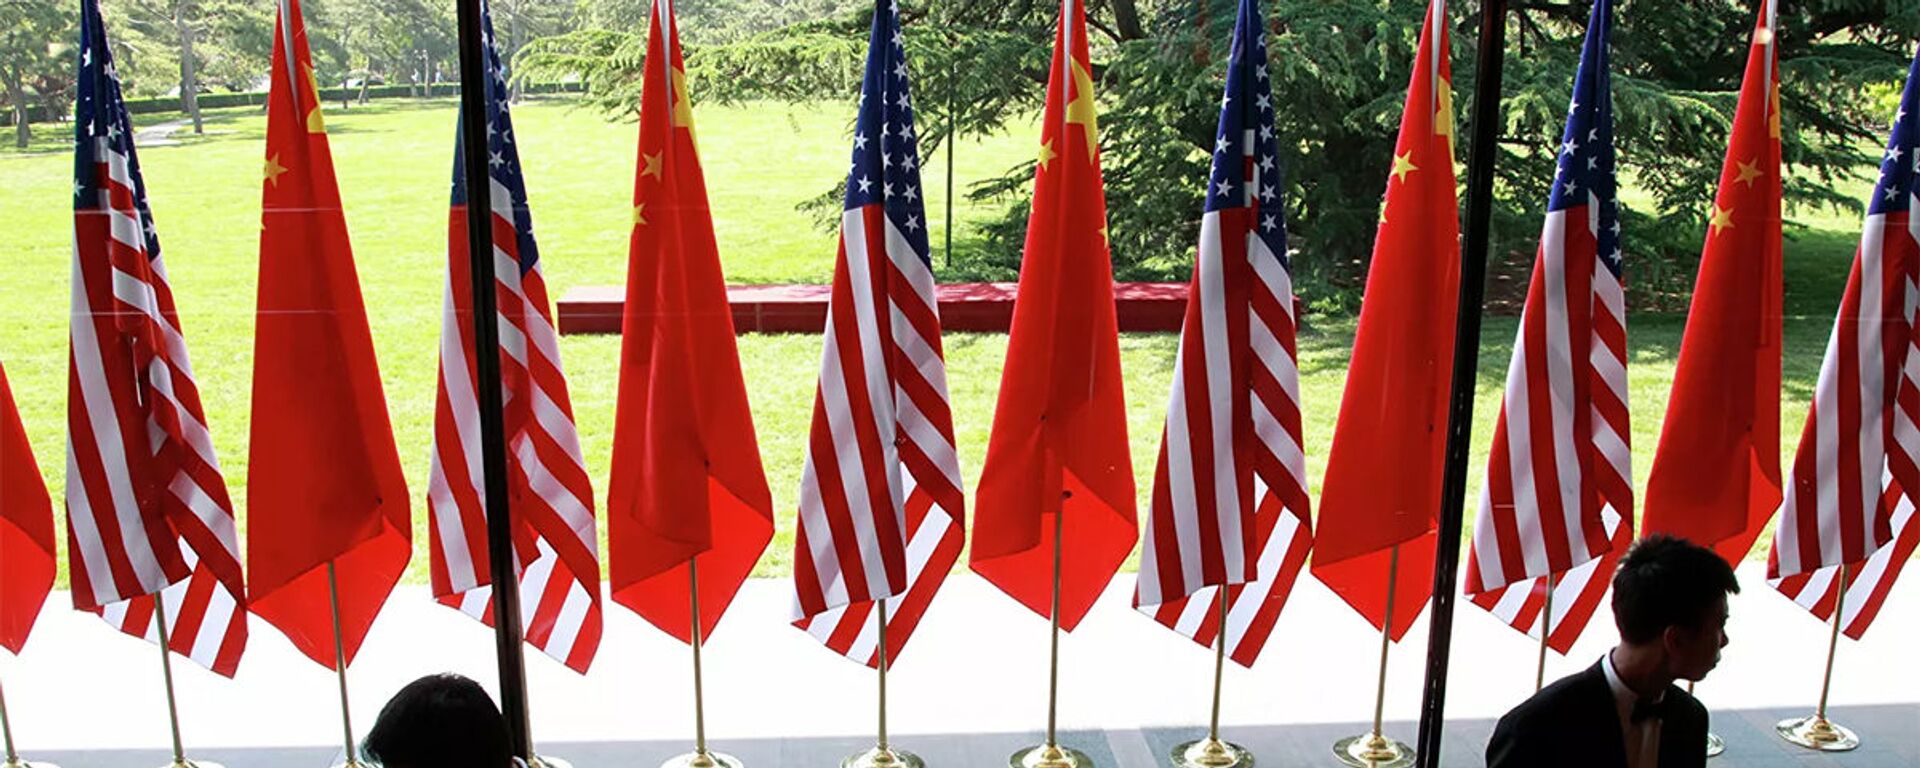 Cờ của Trung Quốc và Hoa Kỳ tại lễ khai mạc Đối thoại chiến lược và kinh tế Mỹ-Trung tại Bắc Kinh - Sputnik Việt Nam, 1920, 19.10.2022